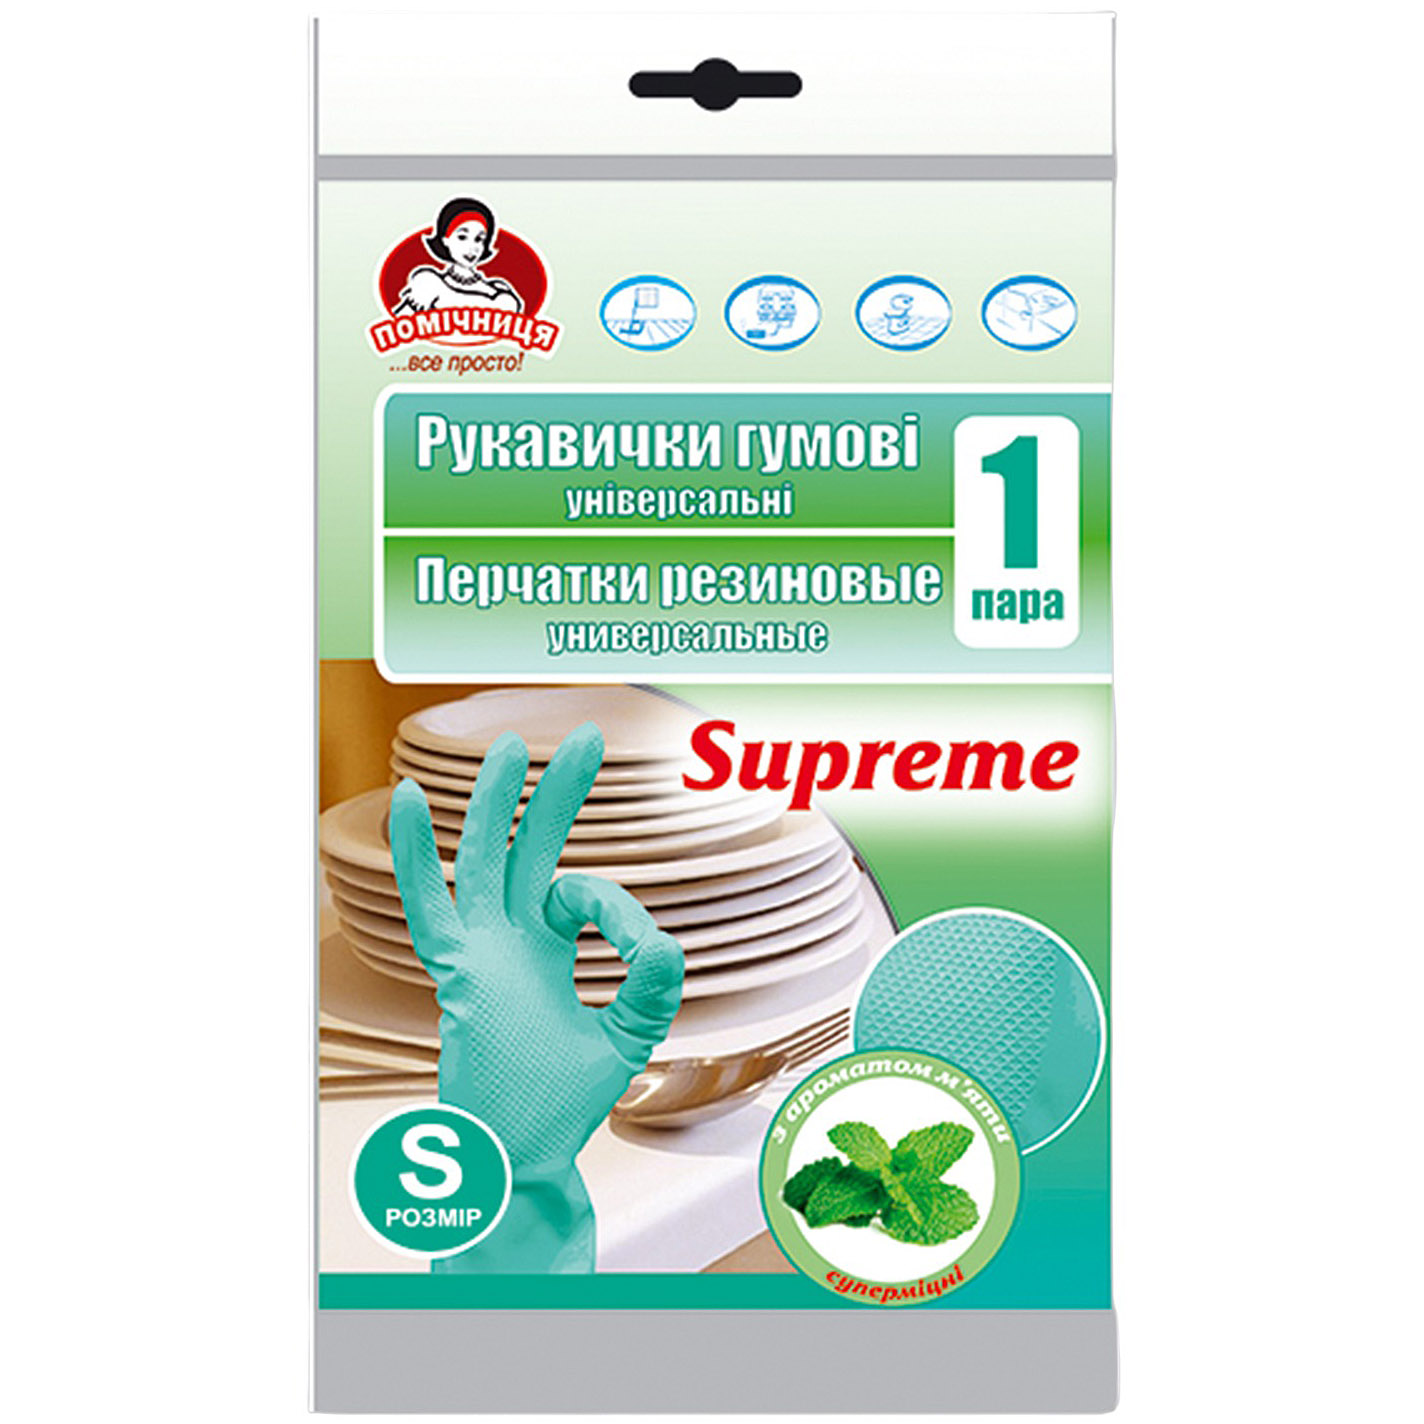 Перчатки резиновые универсальные Помічниця Supreme с ароматом мяты 6 (S) - фото 1